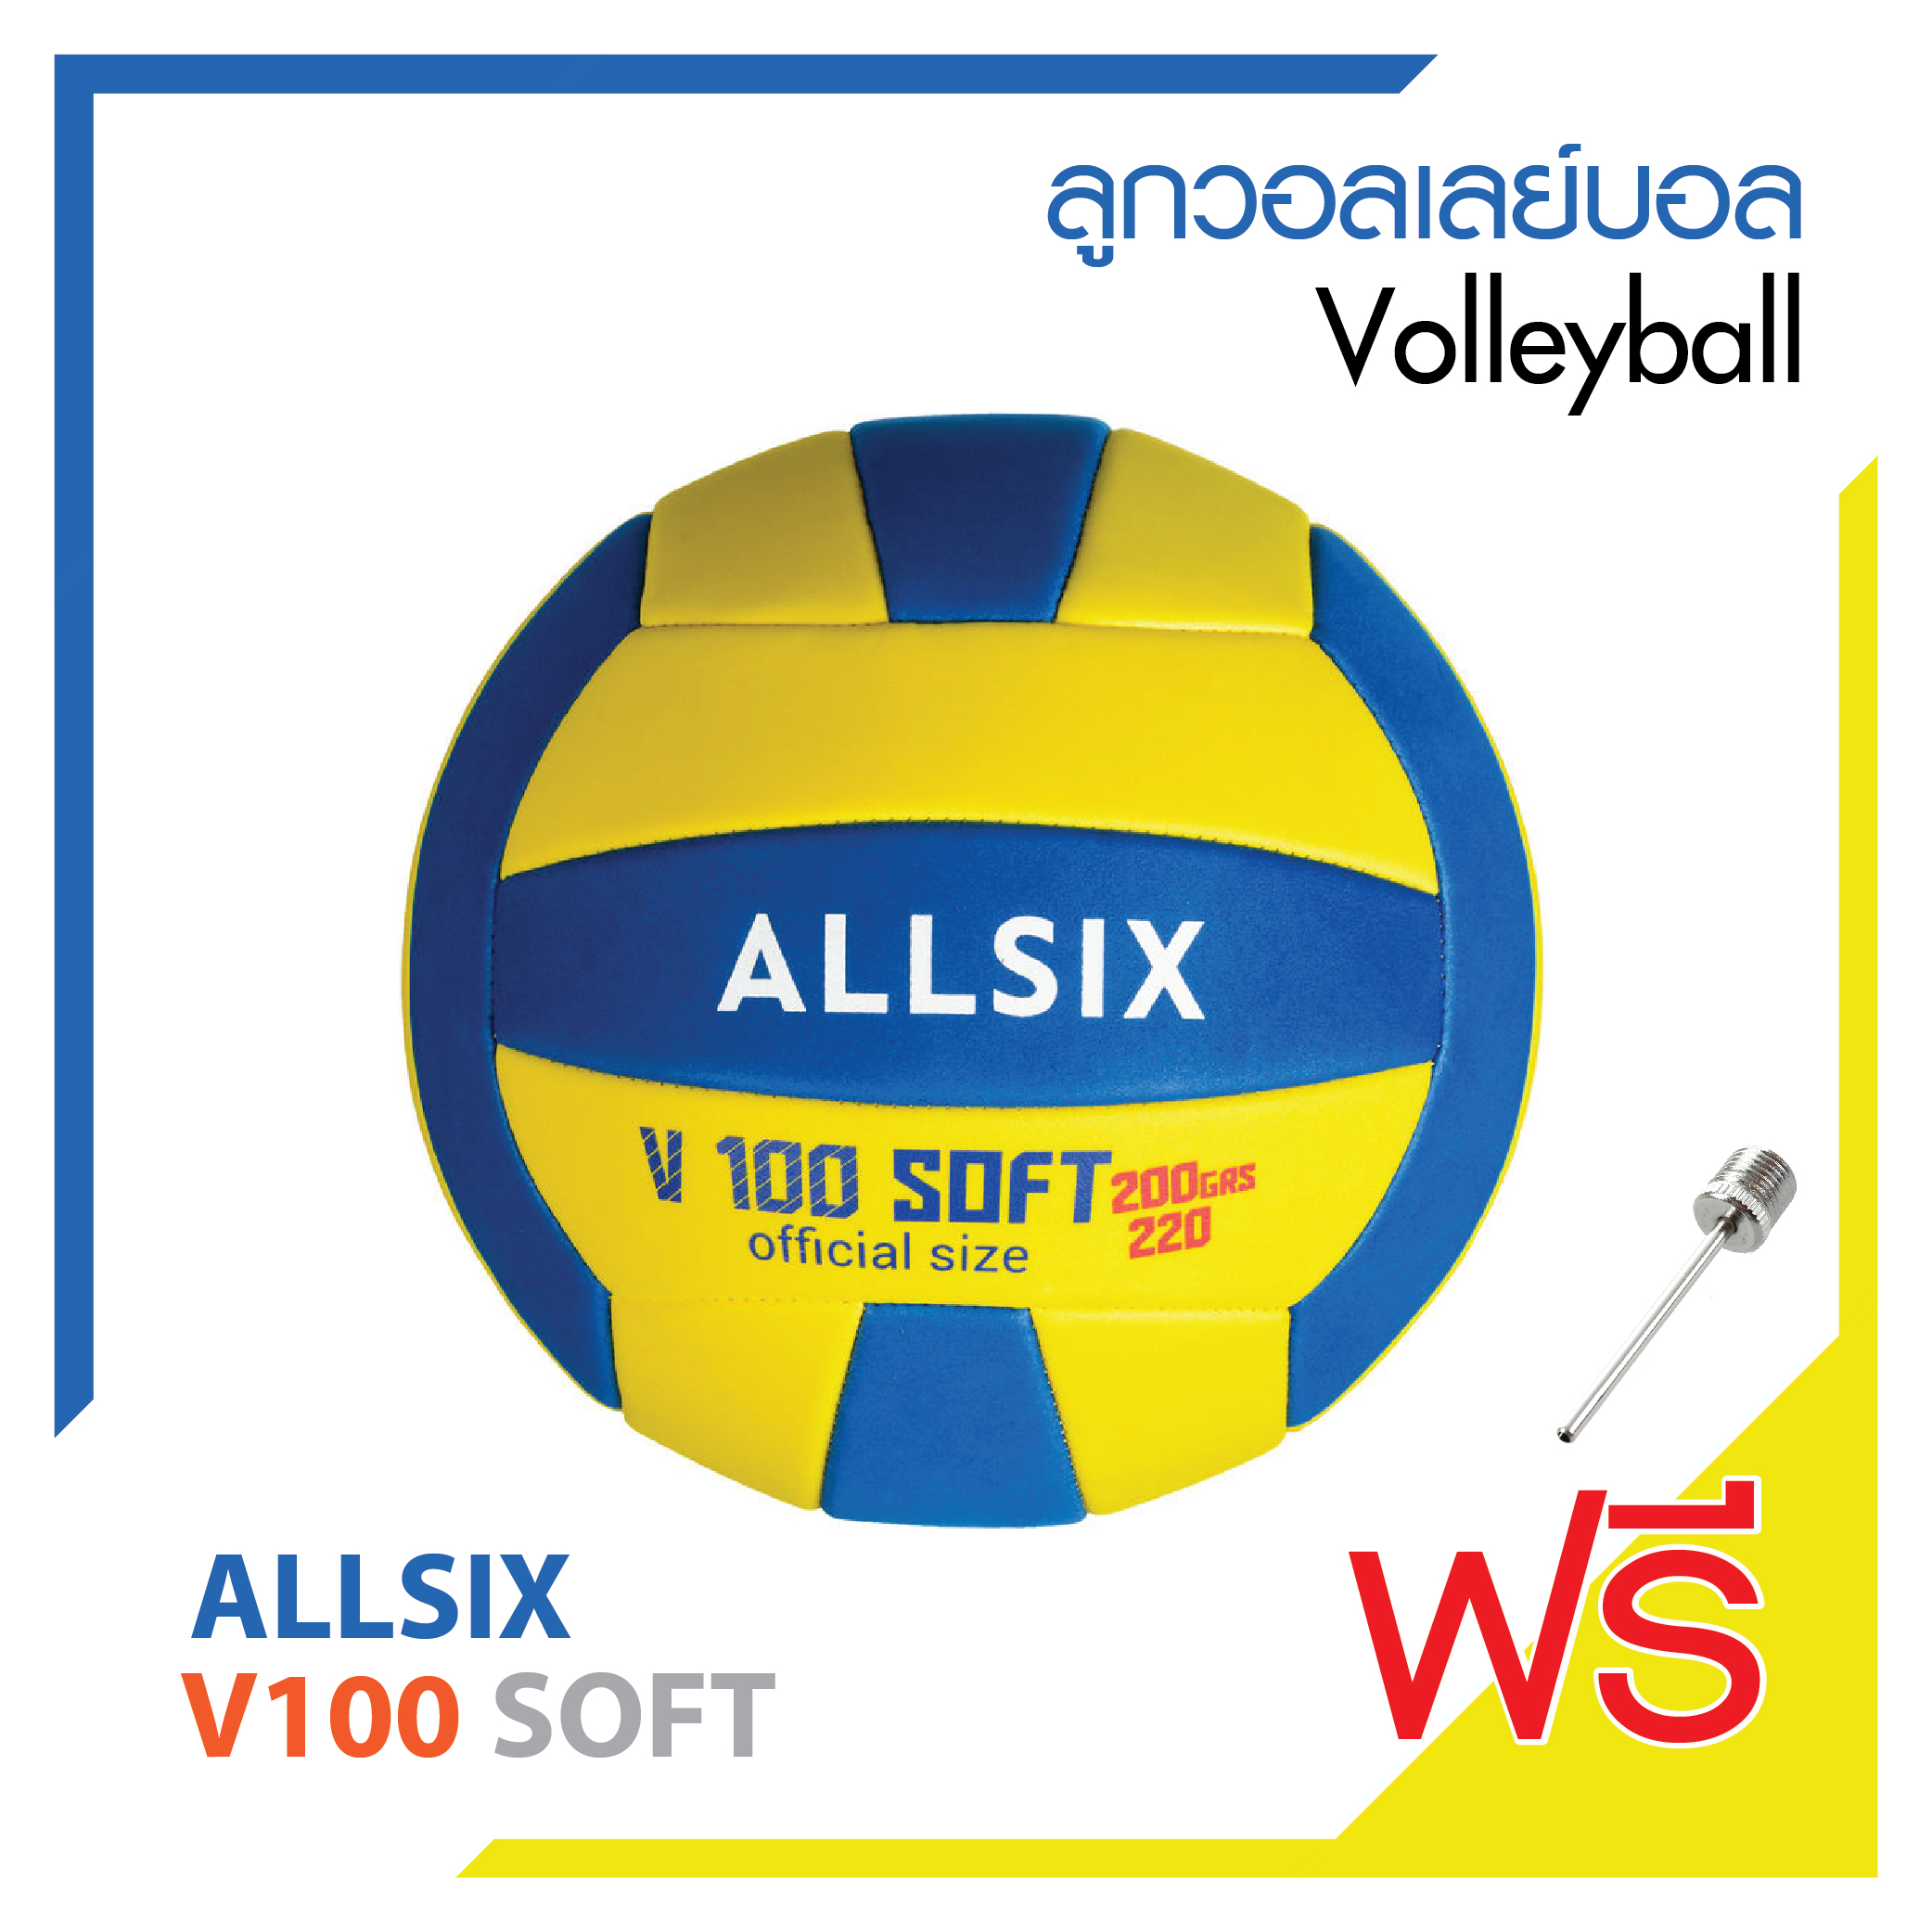 ลูกวอลเลย์บอล วอลเลย์บอล Soft ยี่ห้อ ALLSIX รุ่น V100 SOFT Soft Volleyball สินค้าคุณภาพดี โฟมเนื้อนุ่มน้ำหนักเบา !! ลดพิเศษสุด